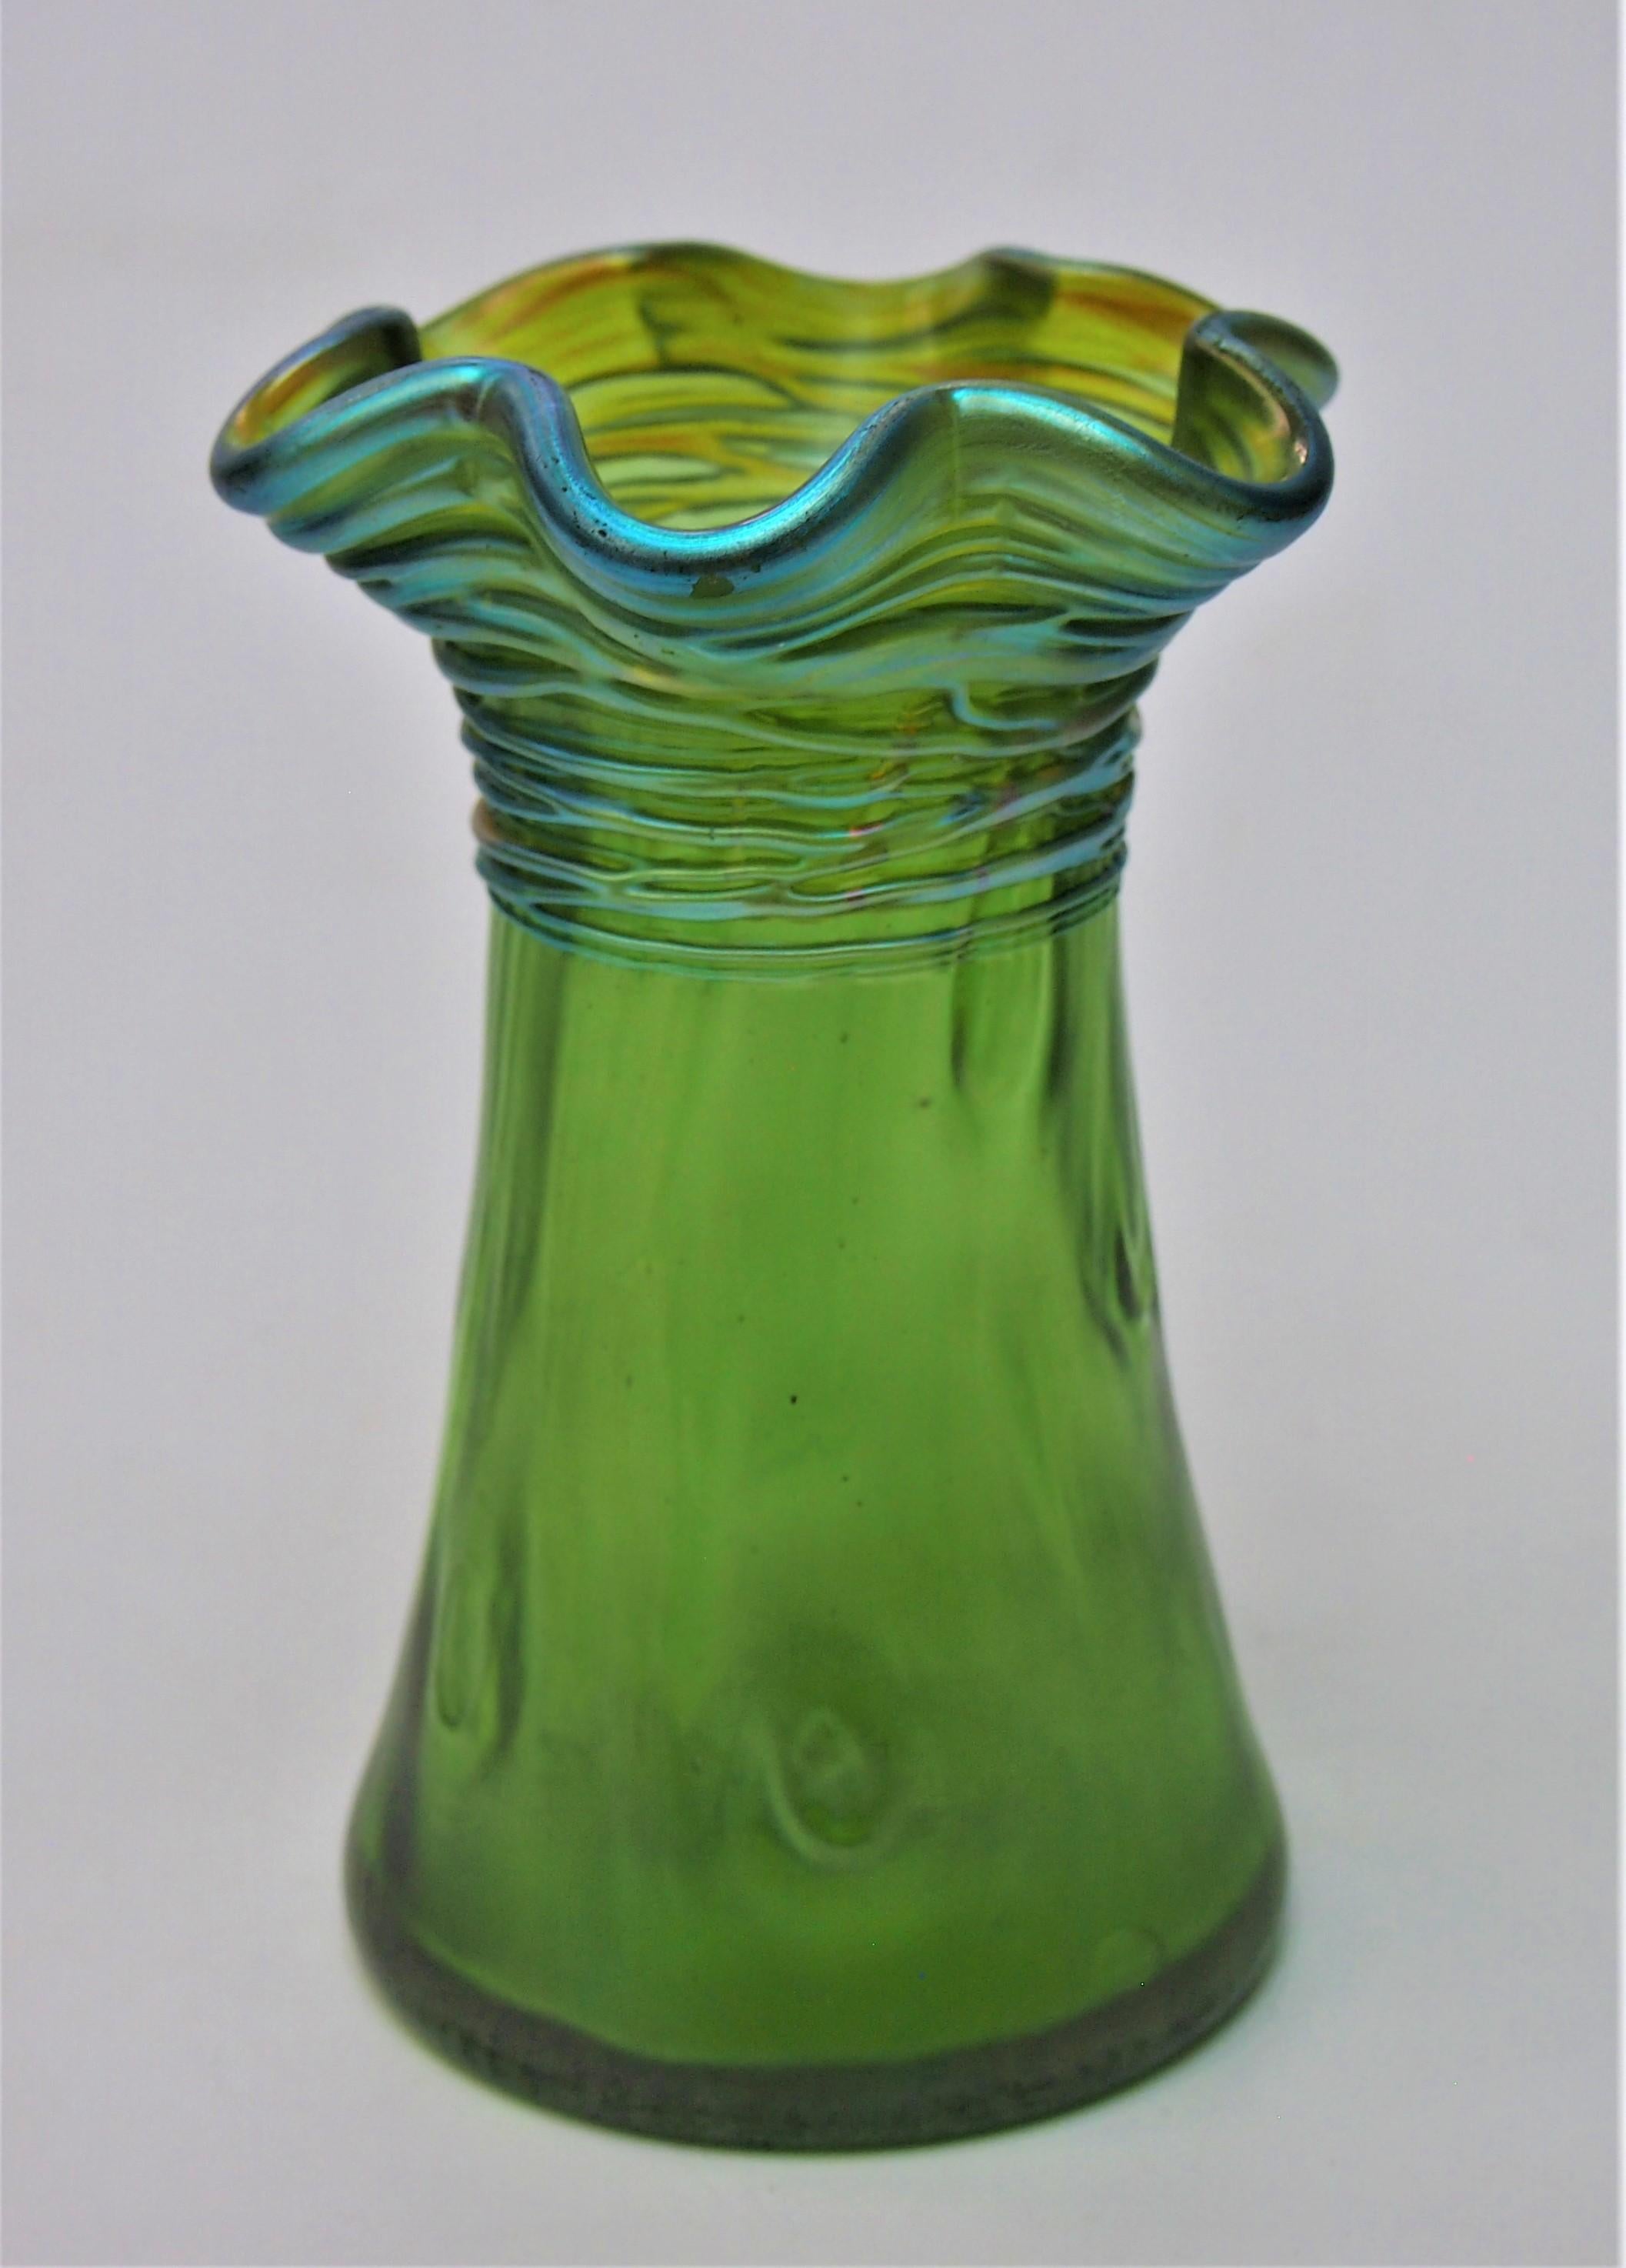 Un fabuleux vase Art Nouveau Loetz 'Crete' (vert) Rusticana avec des fils -Loetz. Le Rusticana  Le décor 